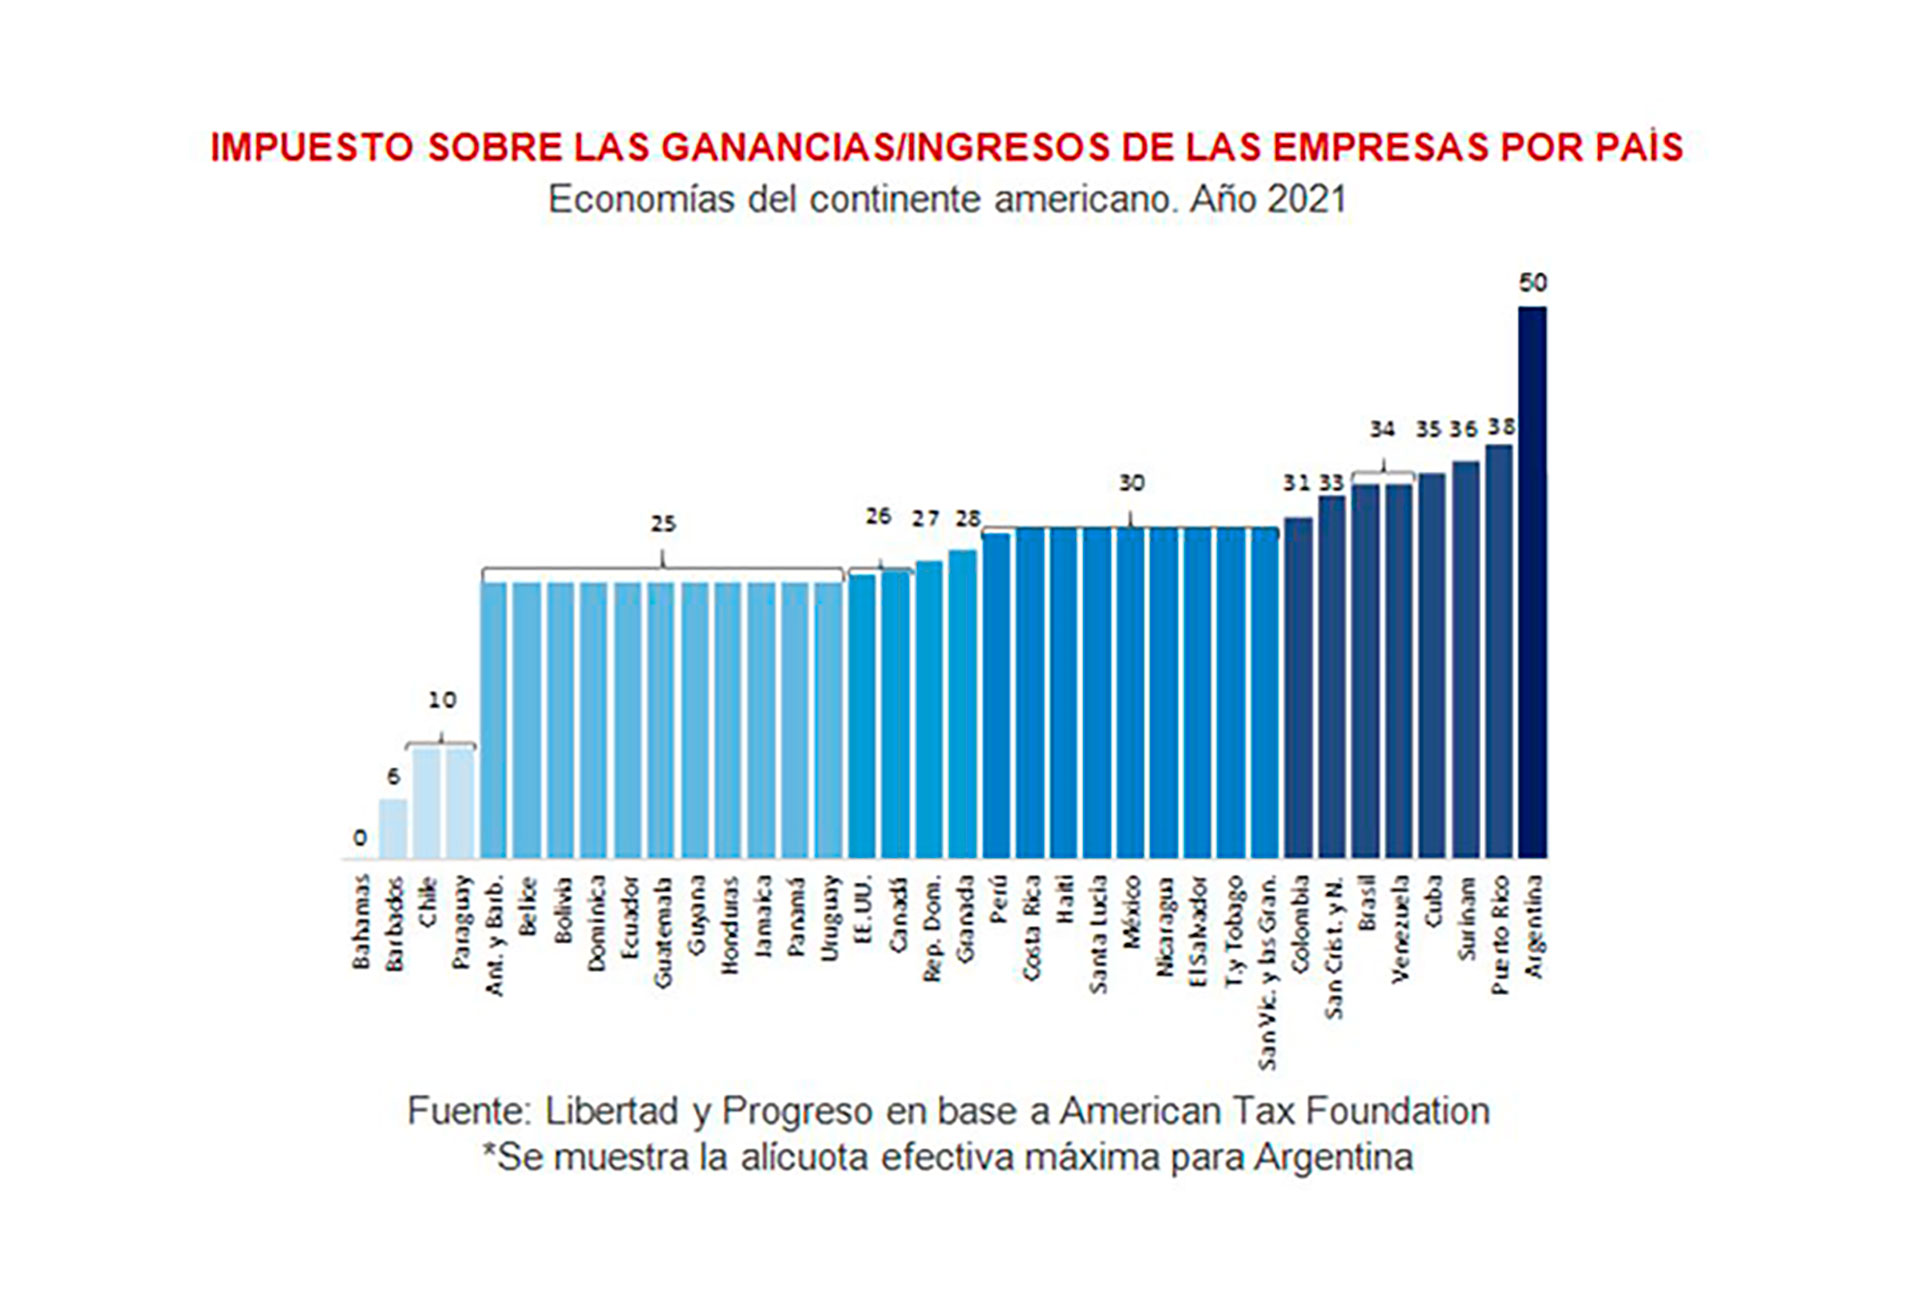 Según un informe de la Fundación Libertad y Progreso, con la sobrealícuota por "renta inesperada" el Impuesto a las Ganancias sobre las Sociedades pone a la Argentina al tope de la tributación de ese tipo